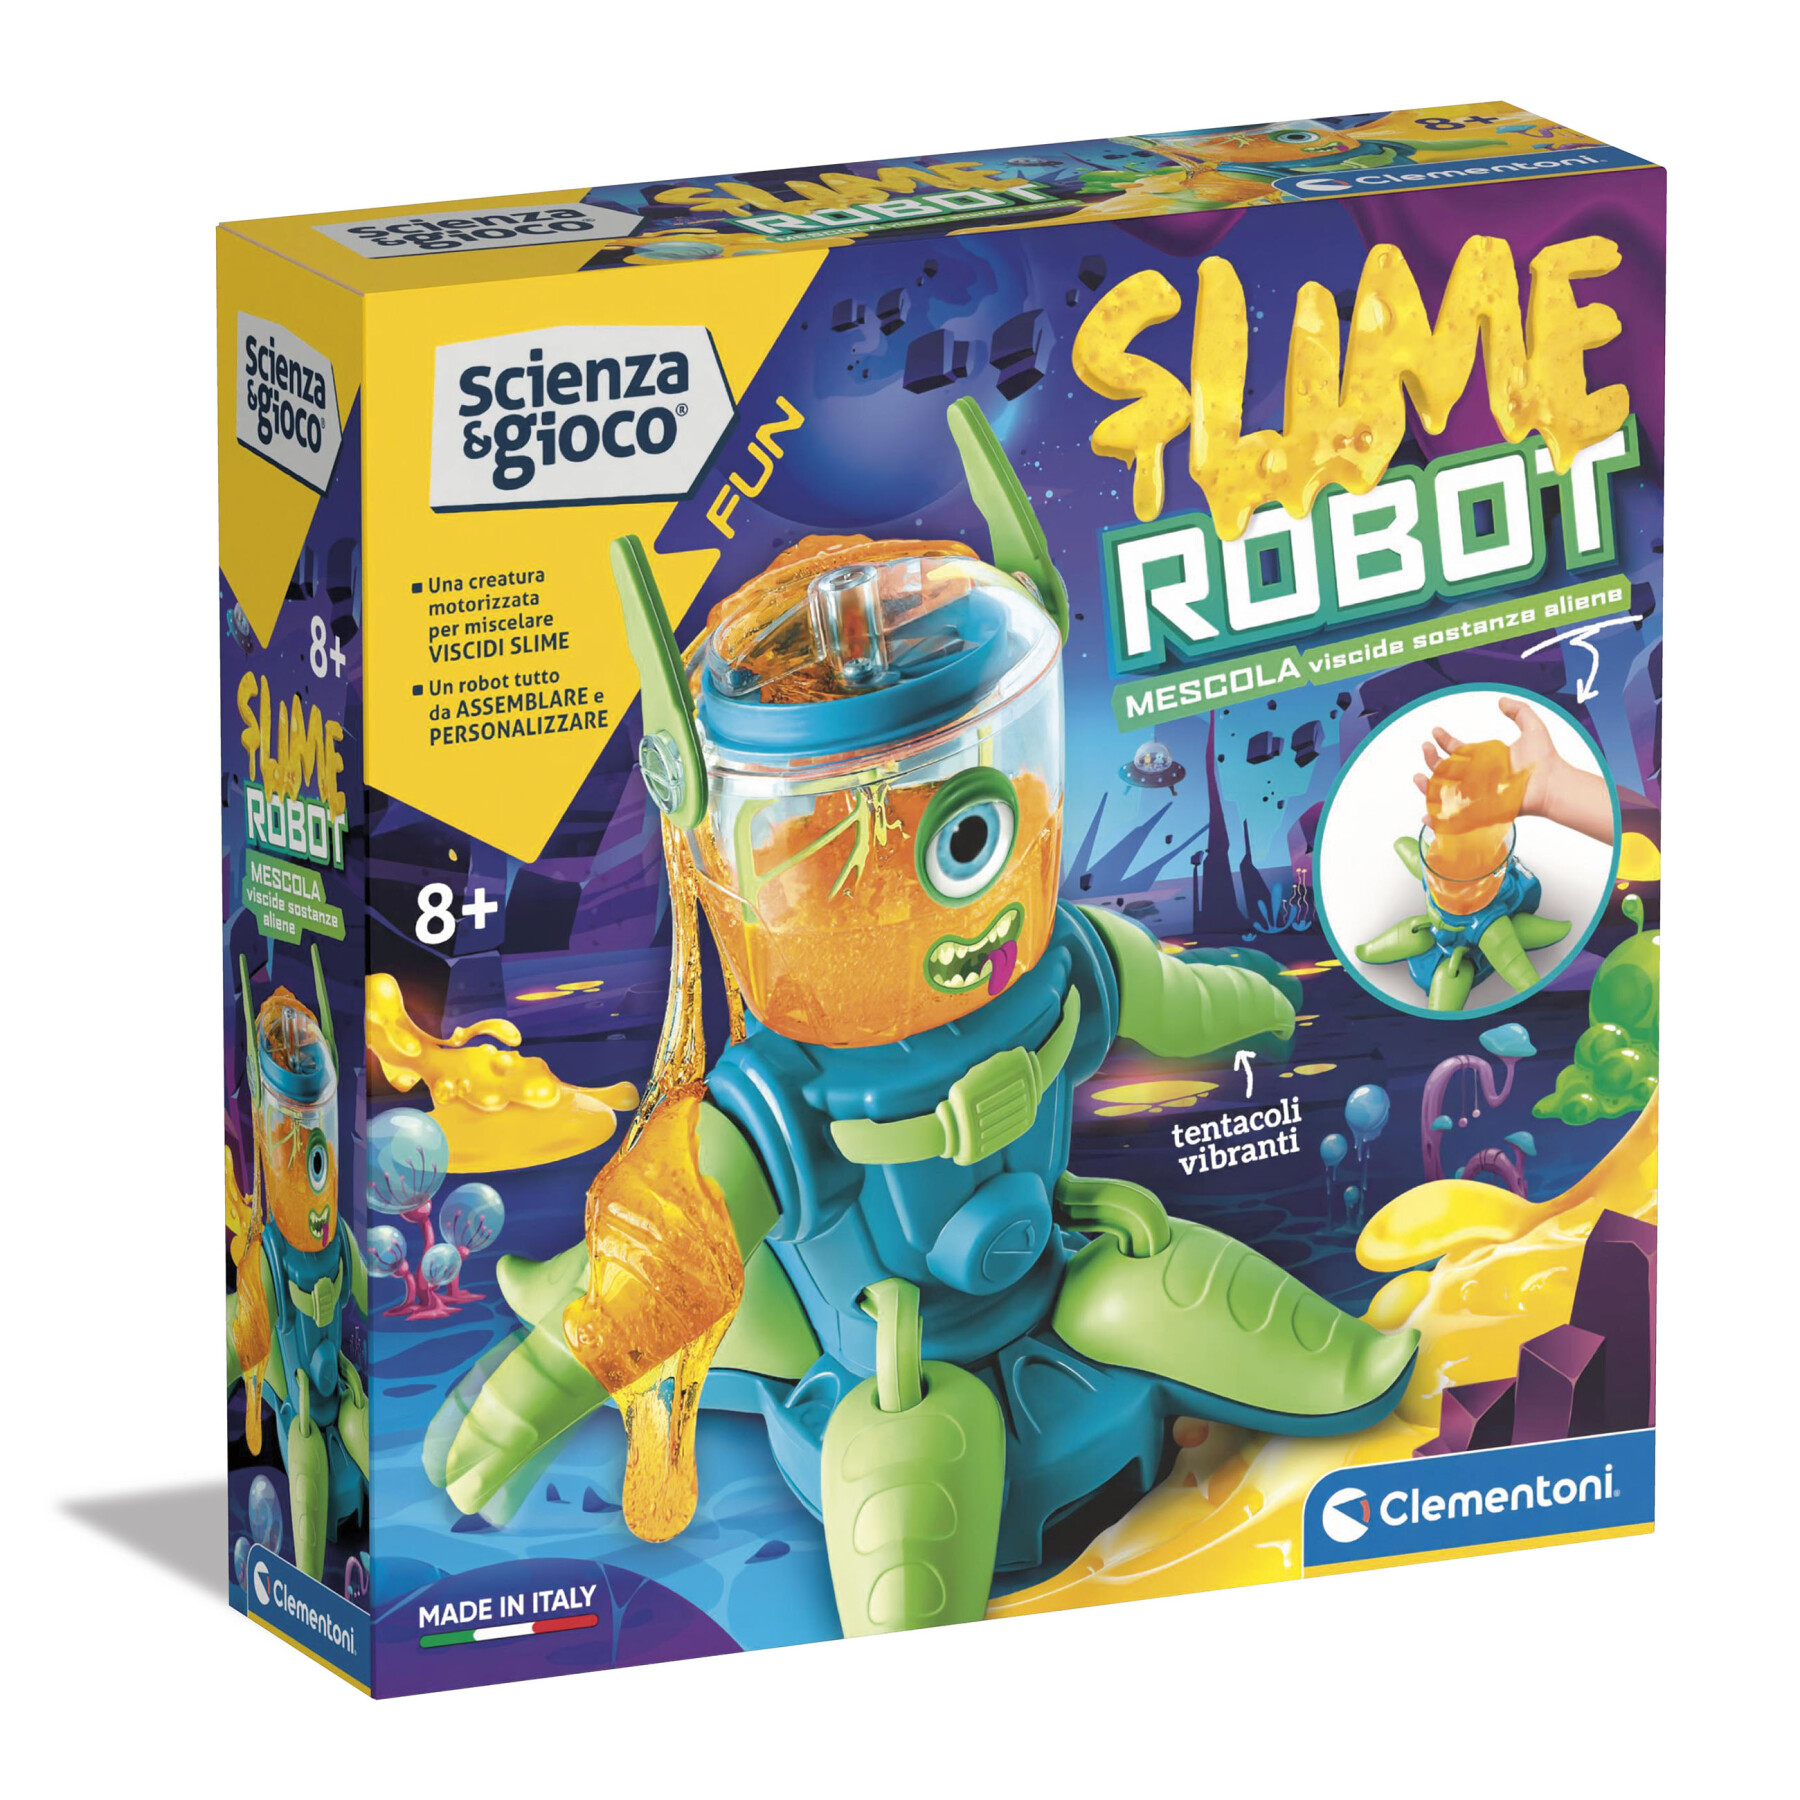 Clementoni - 19273 - scienza e gioco fun - slime robot - Scienza e Gioco